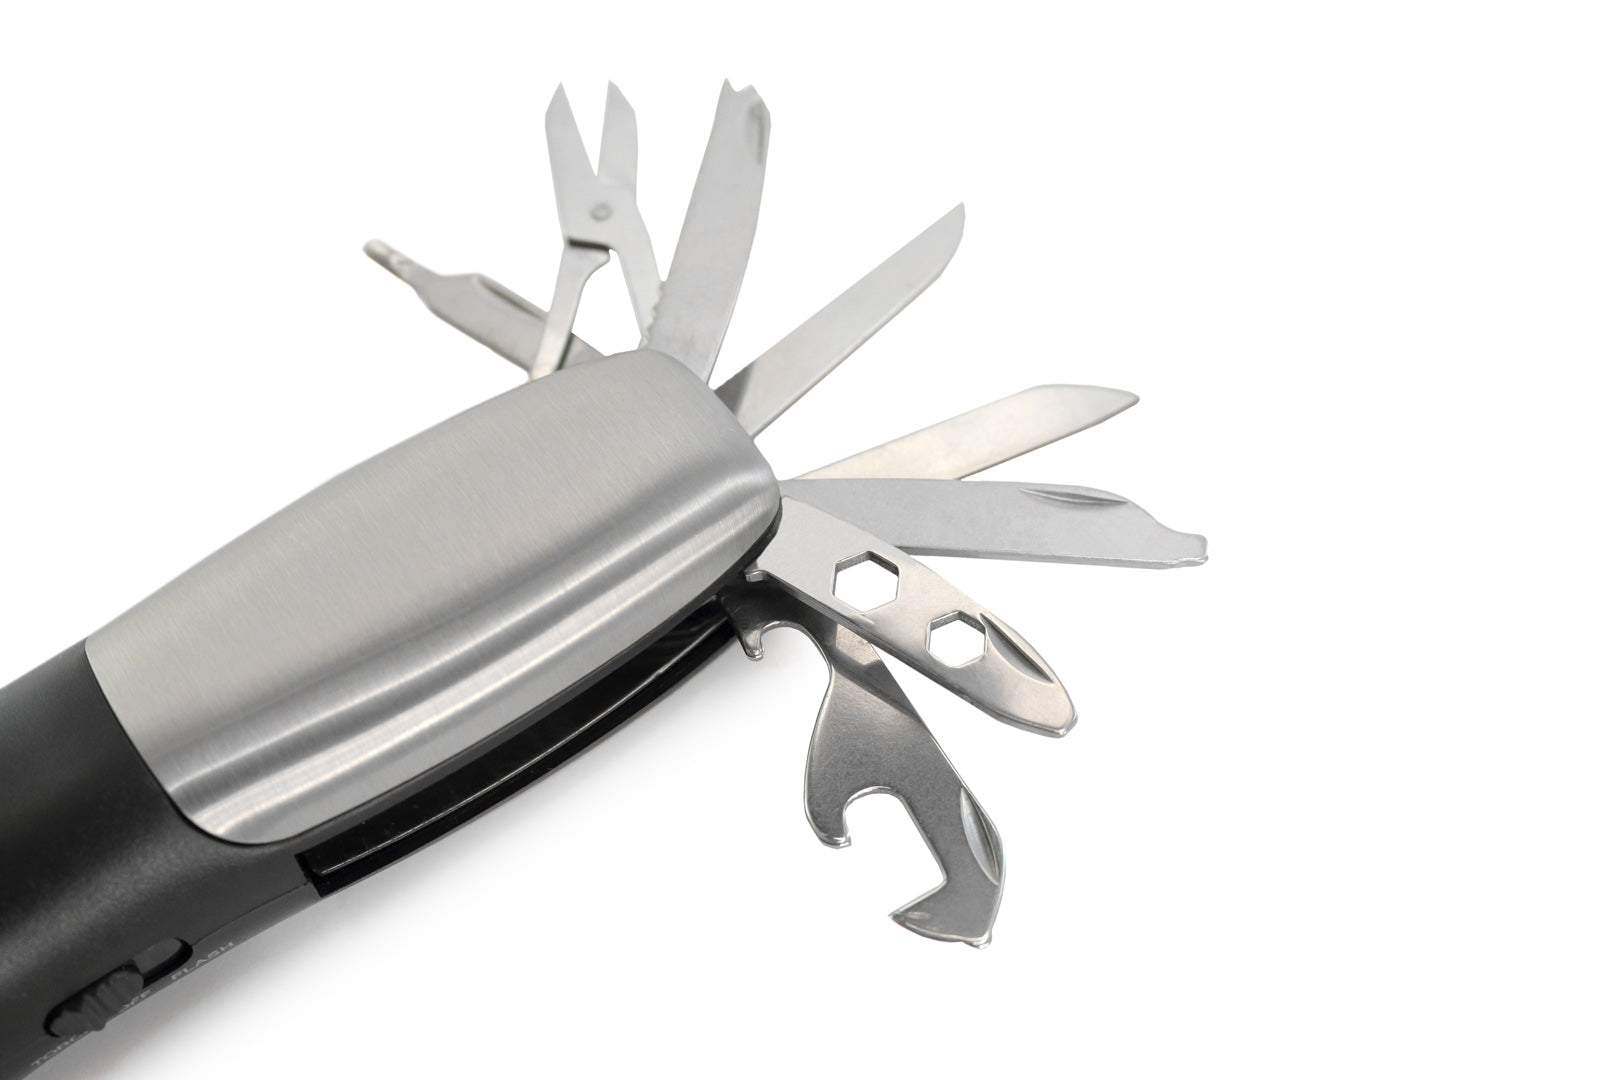 Equipée de 12 fonctions, incluant tournevis, couteaux, clés, ciseaux et outils d'ouverture pour une polyvalence maximale.